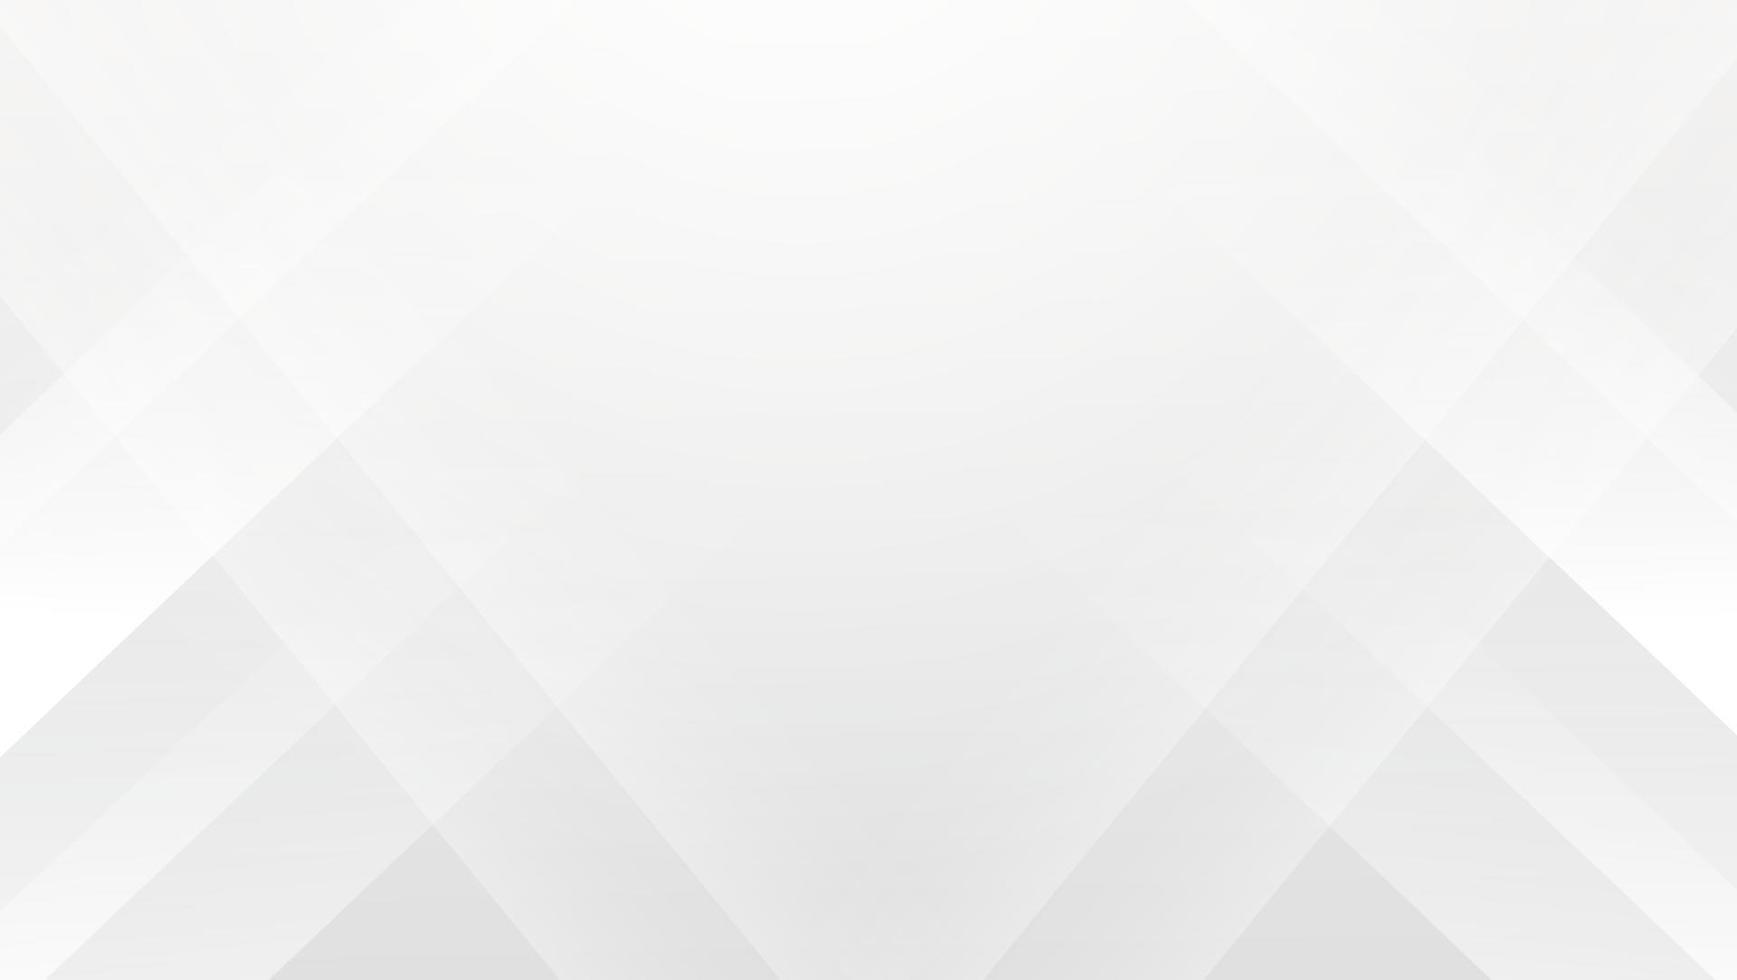 abstraktes geometrisches Weiß und Grau auf hellsilbernem Hintergrund mit Farbverlauf. modernes Bannerdesign. Vektor-Illustration vektor